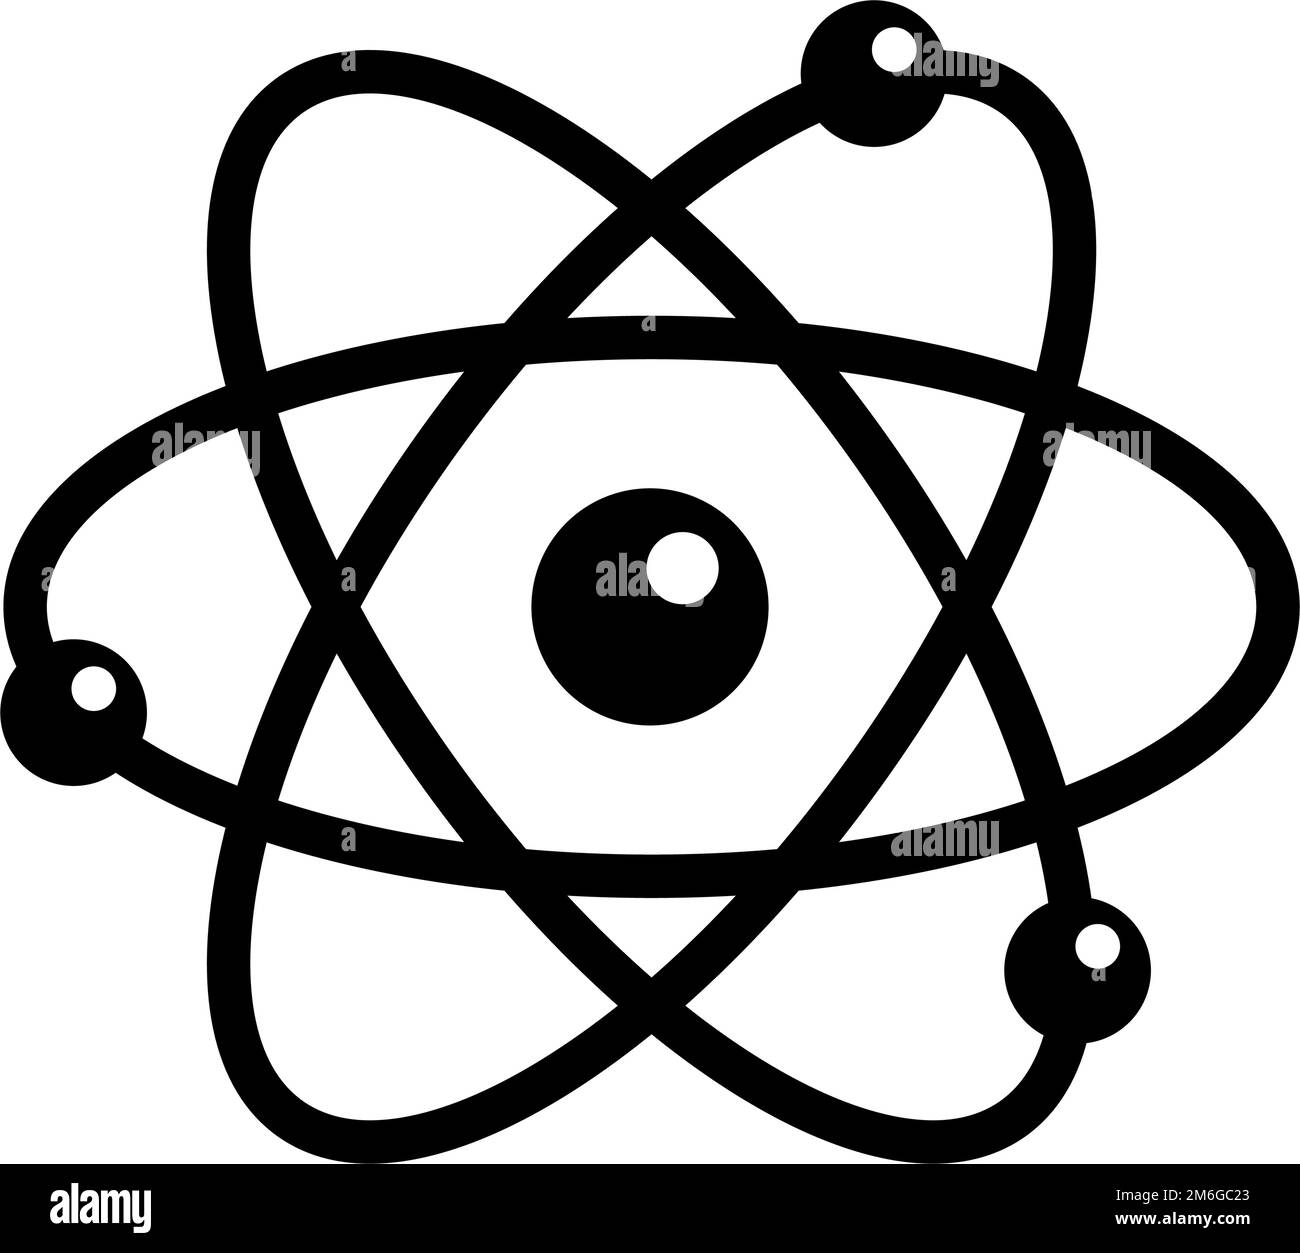 Atom and electron silhouette icon. Editable vector. Stock Vector